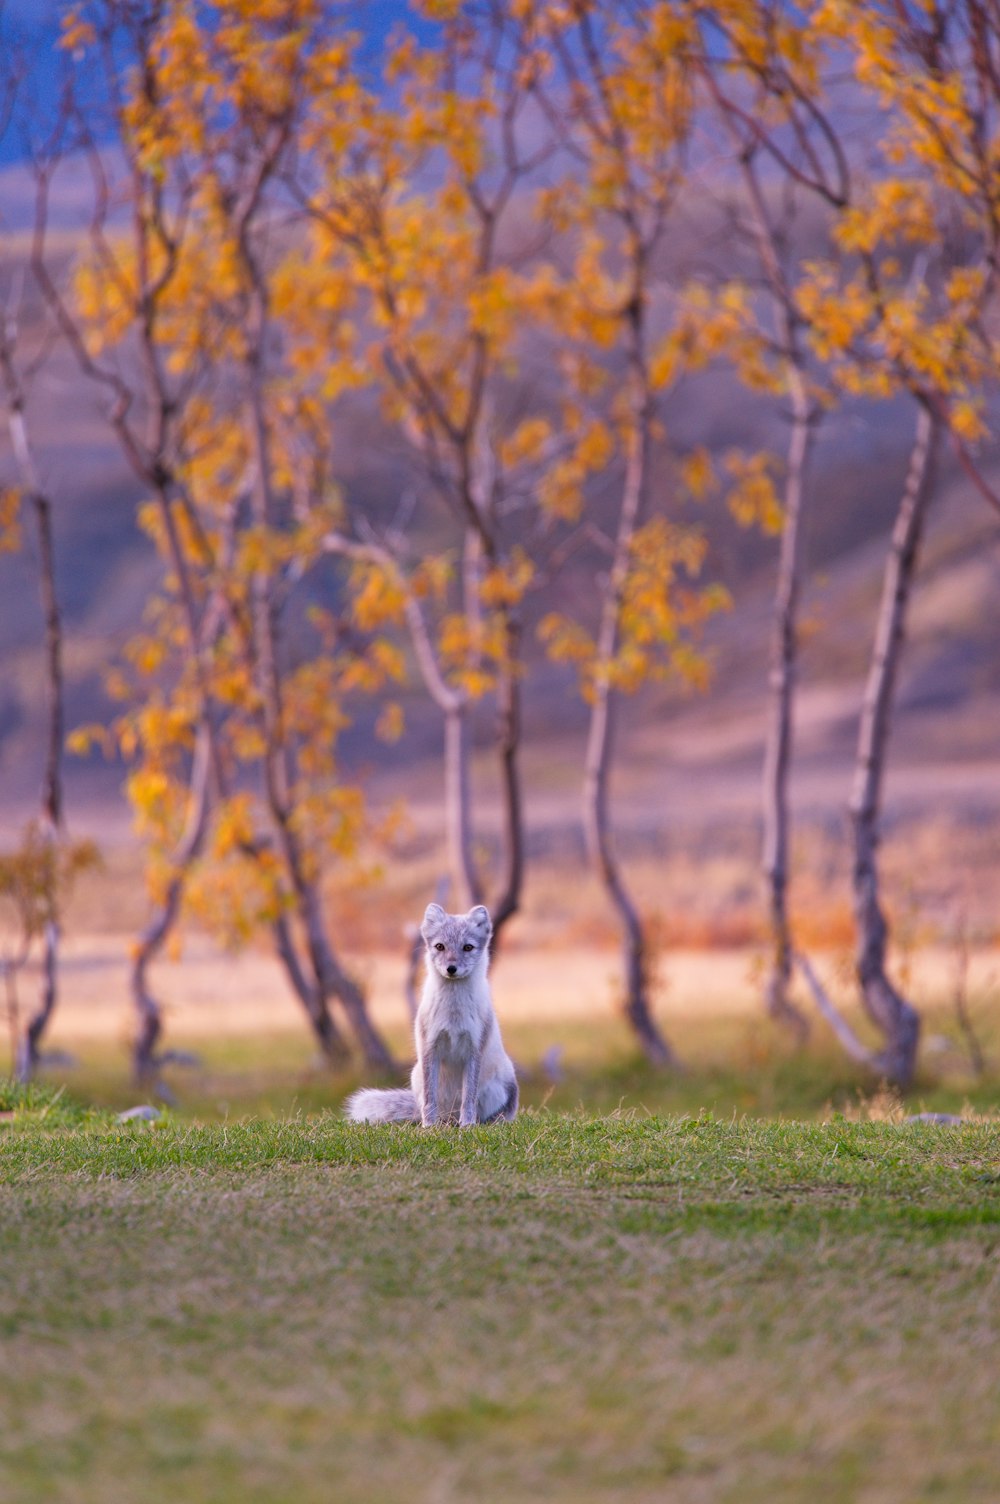 fotografia selettiva della messa a fuoco della volpe bianca vicino agli alberi della foglia marrone